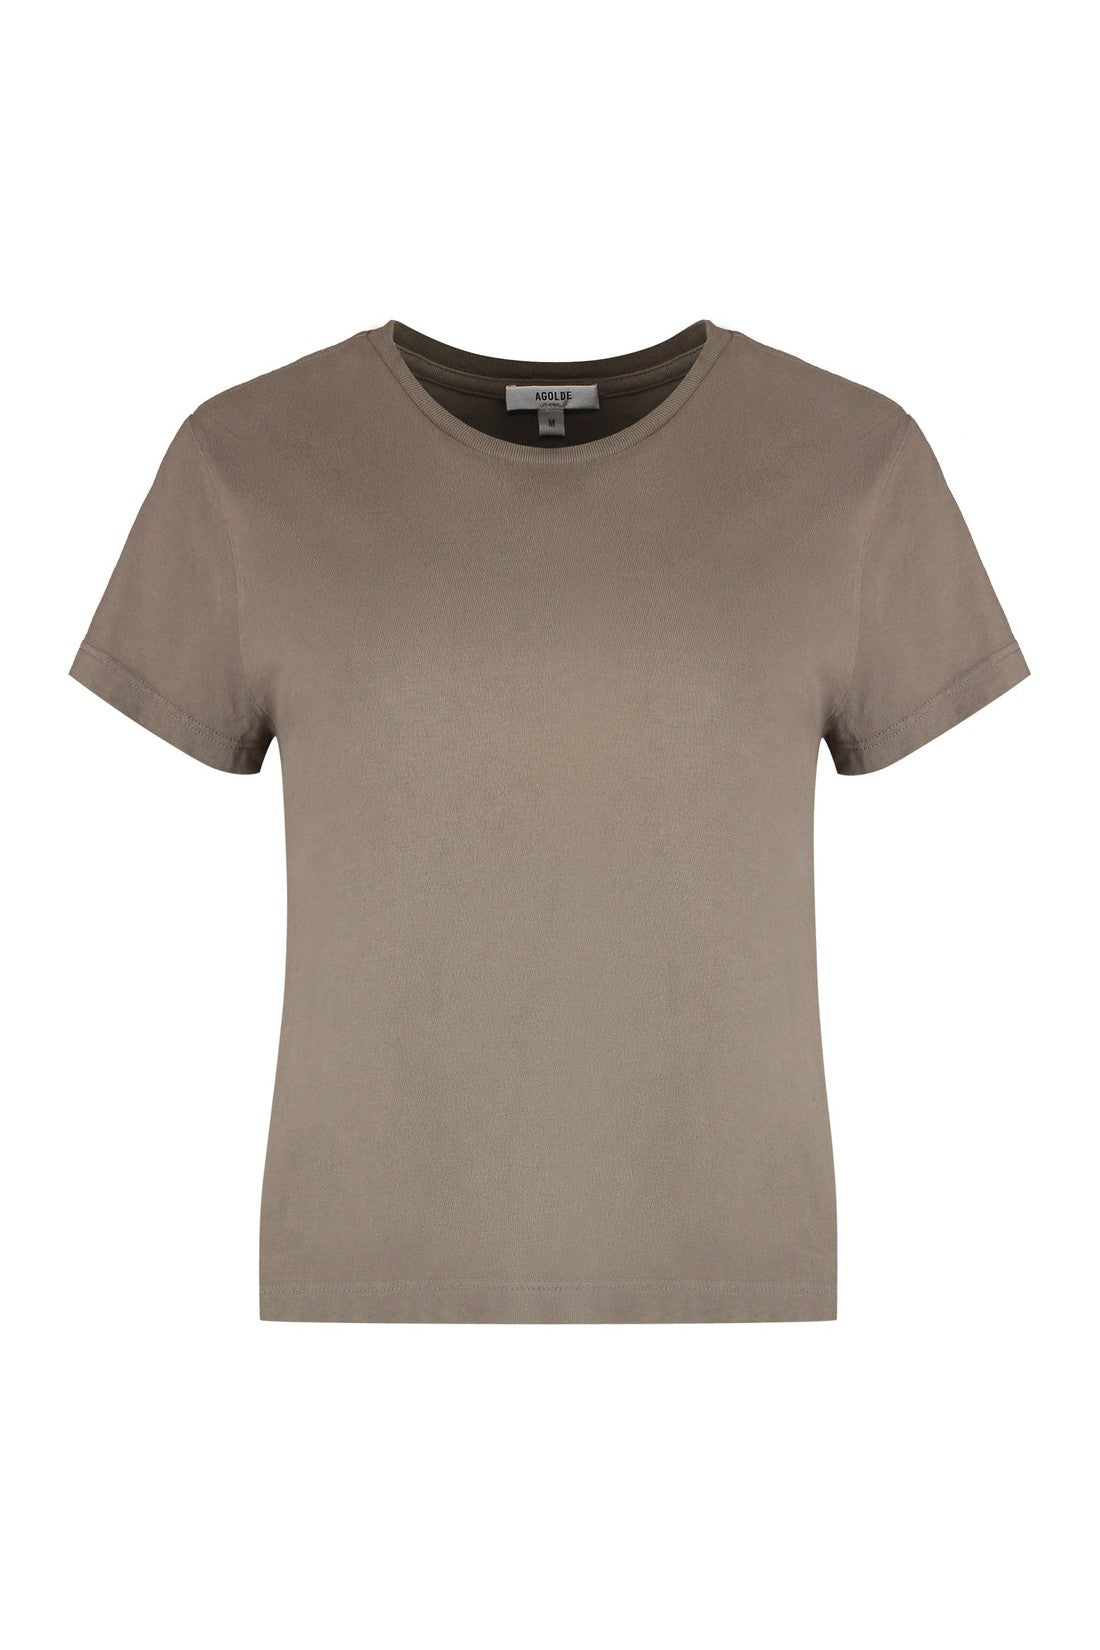 AGOLDE-OUTLET-SALE-Cotton crew-neck T-shirt-ARCHIVIST